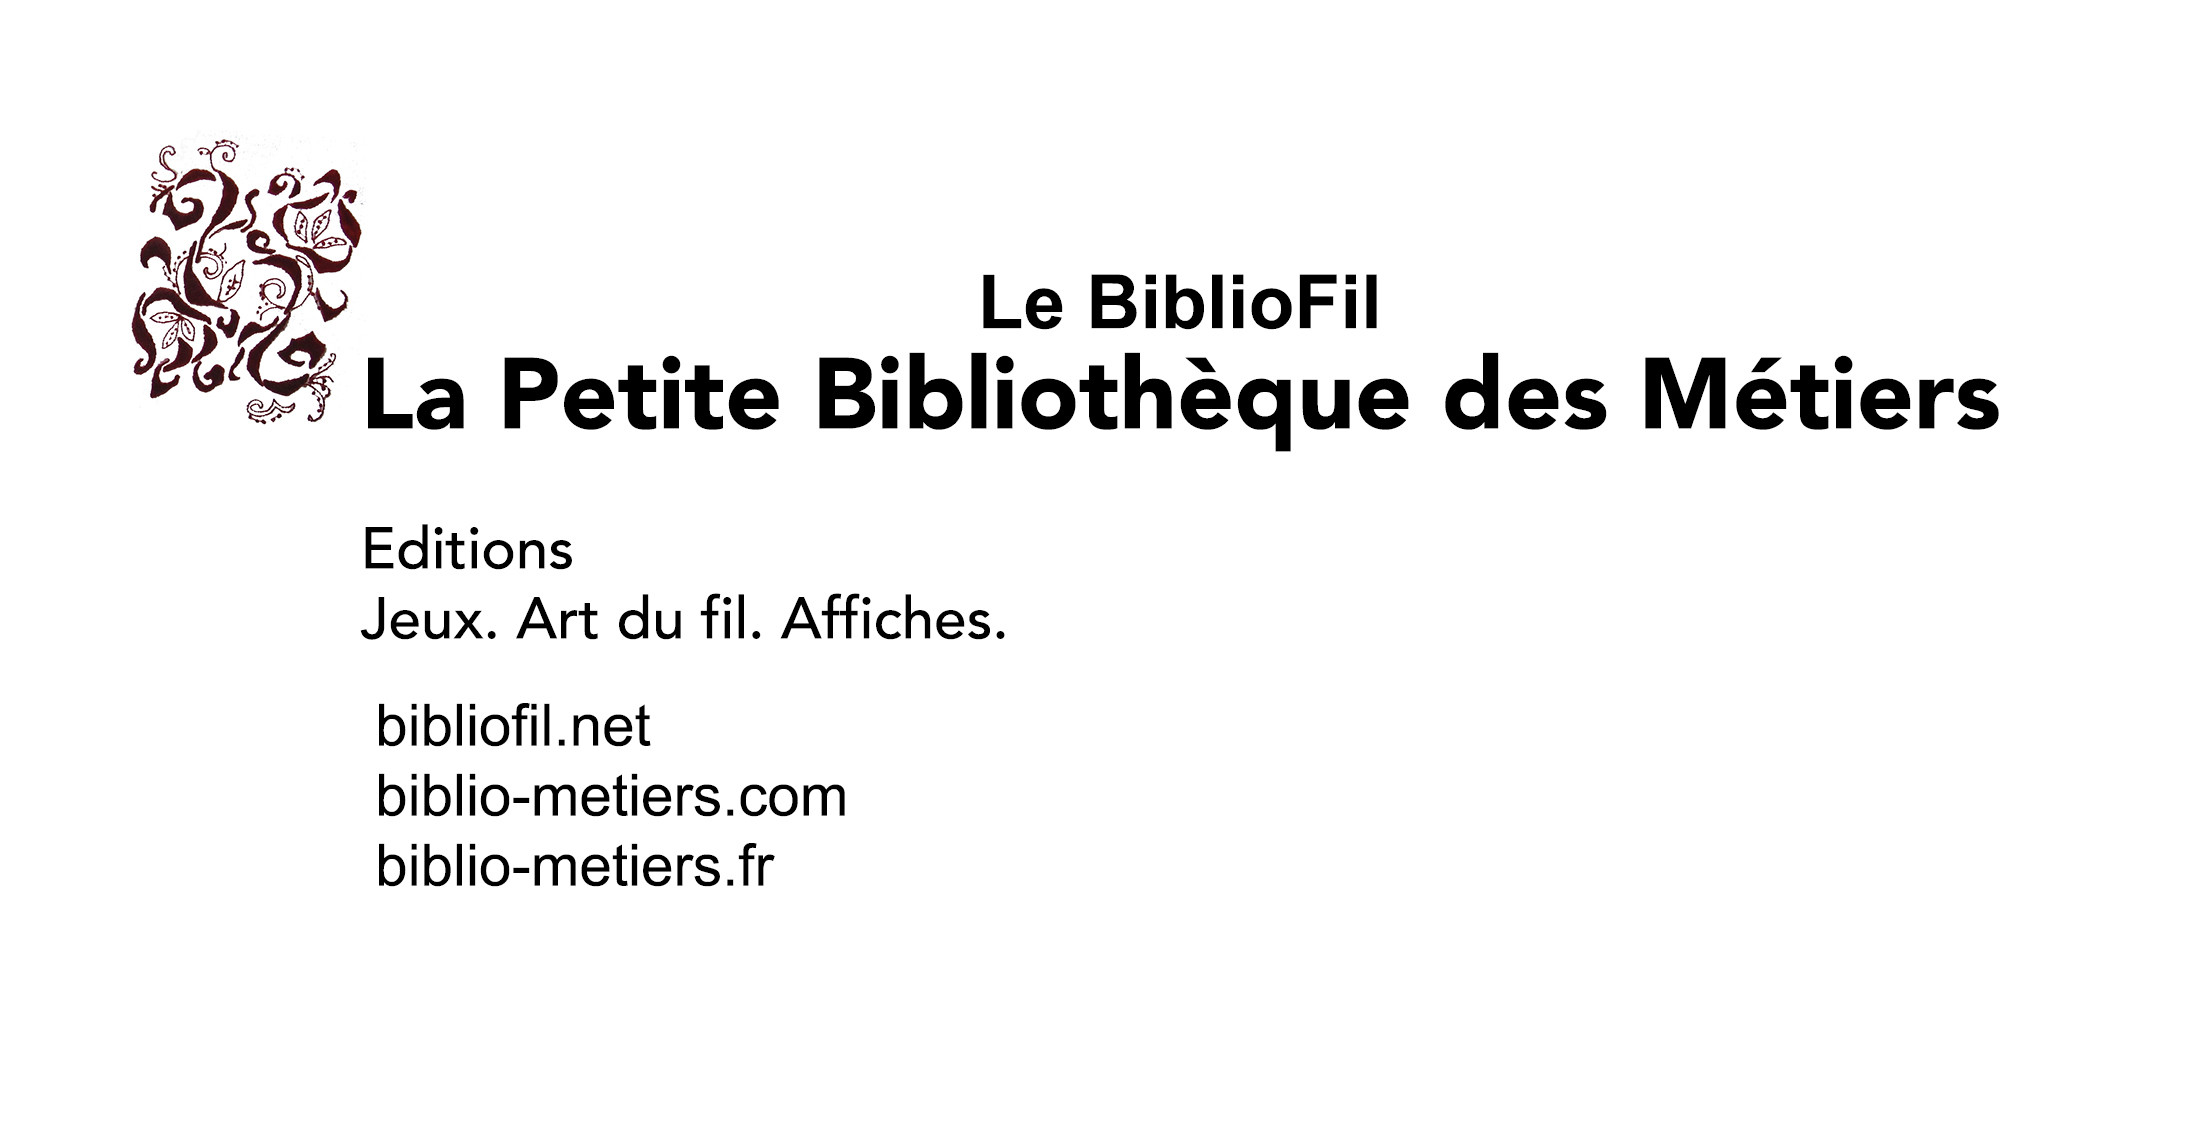 La Petite Bibliothèque des Métiers. Le BiblioFil